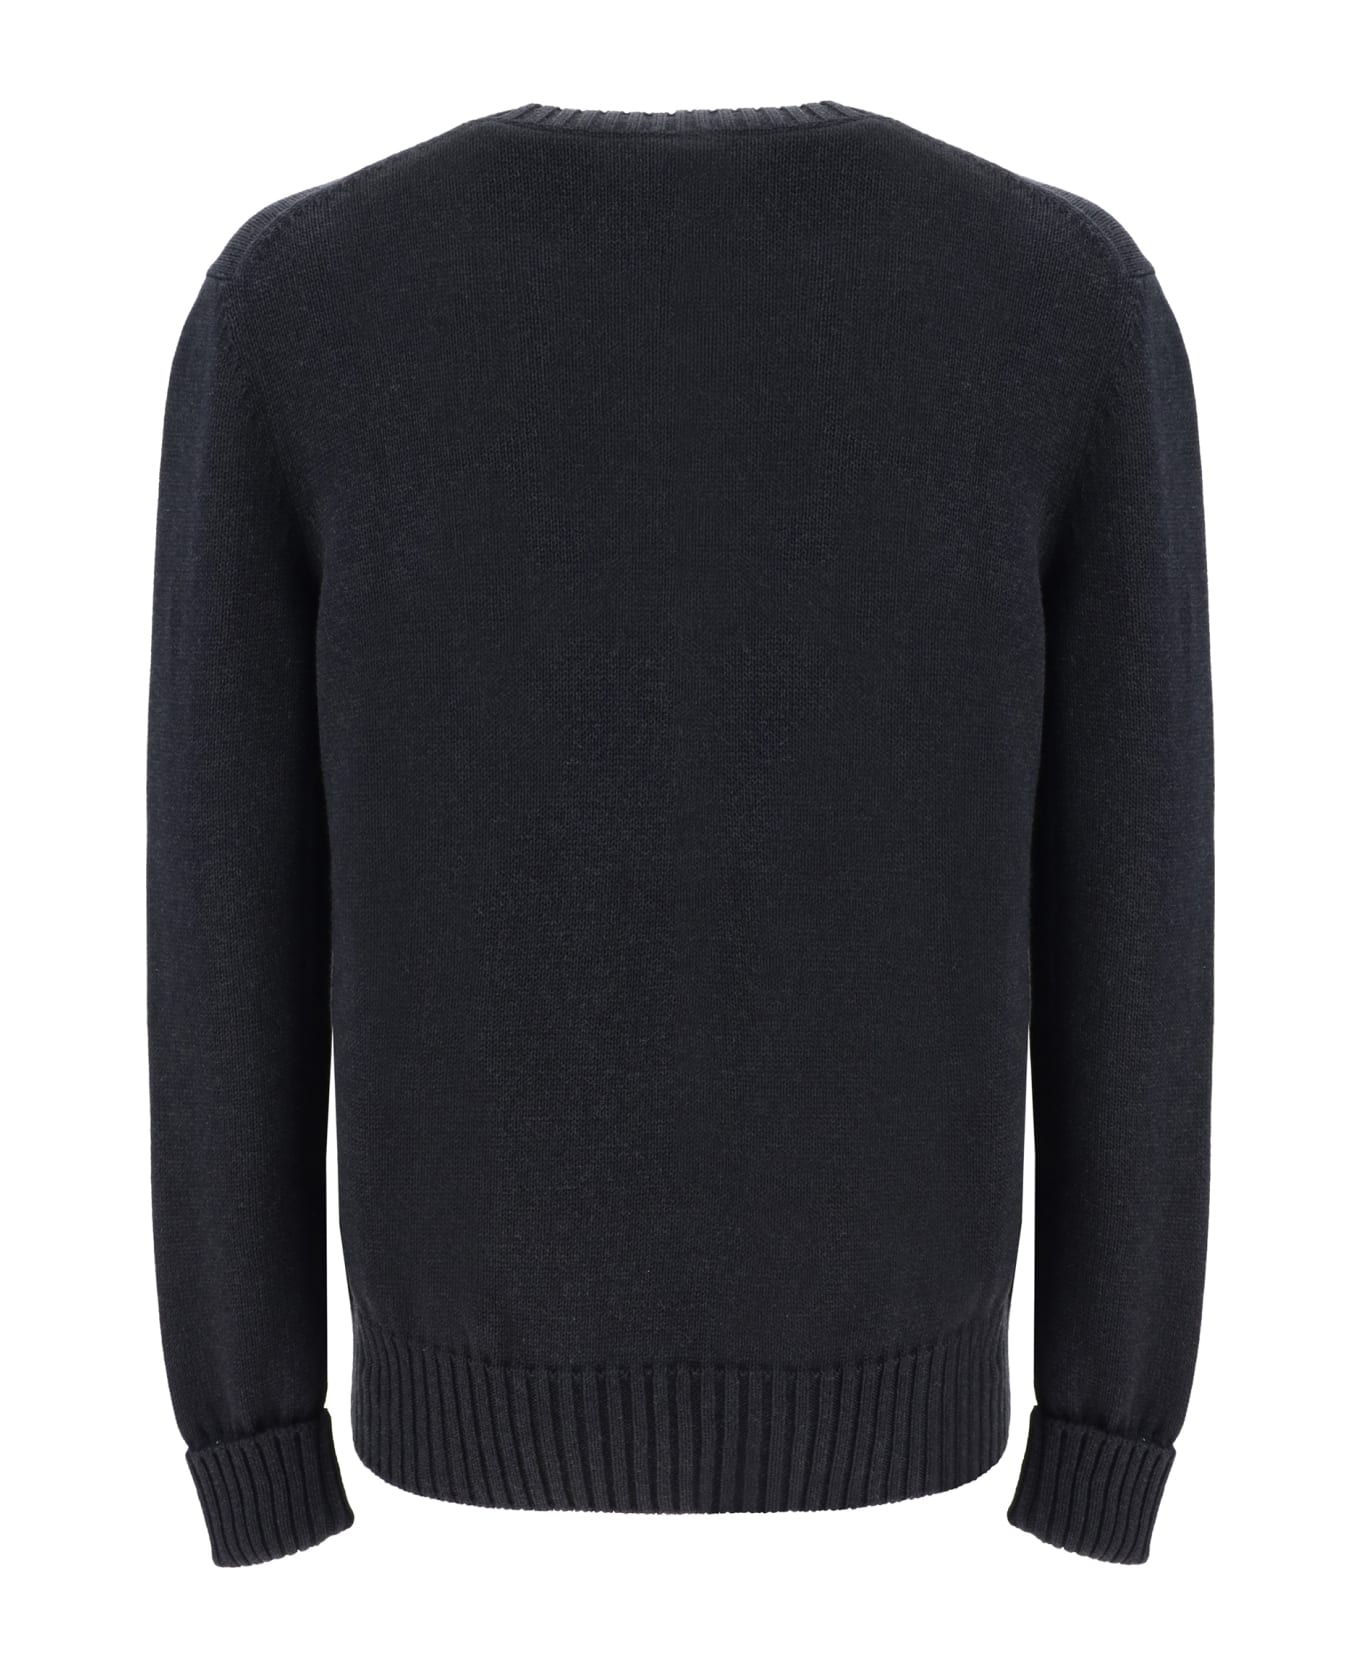 Alexander McQueen Sweater - Charcoal/steel ニットウェア